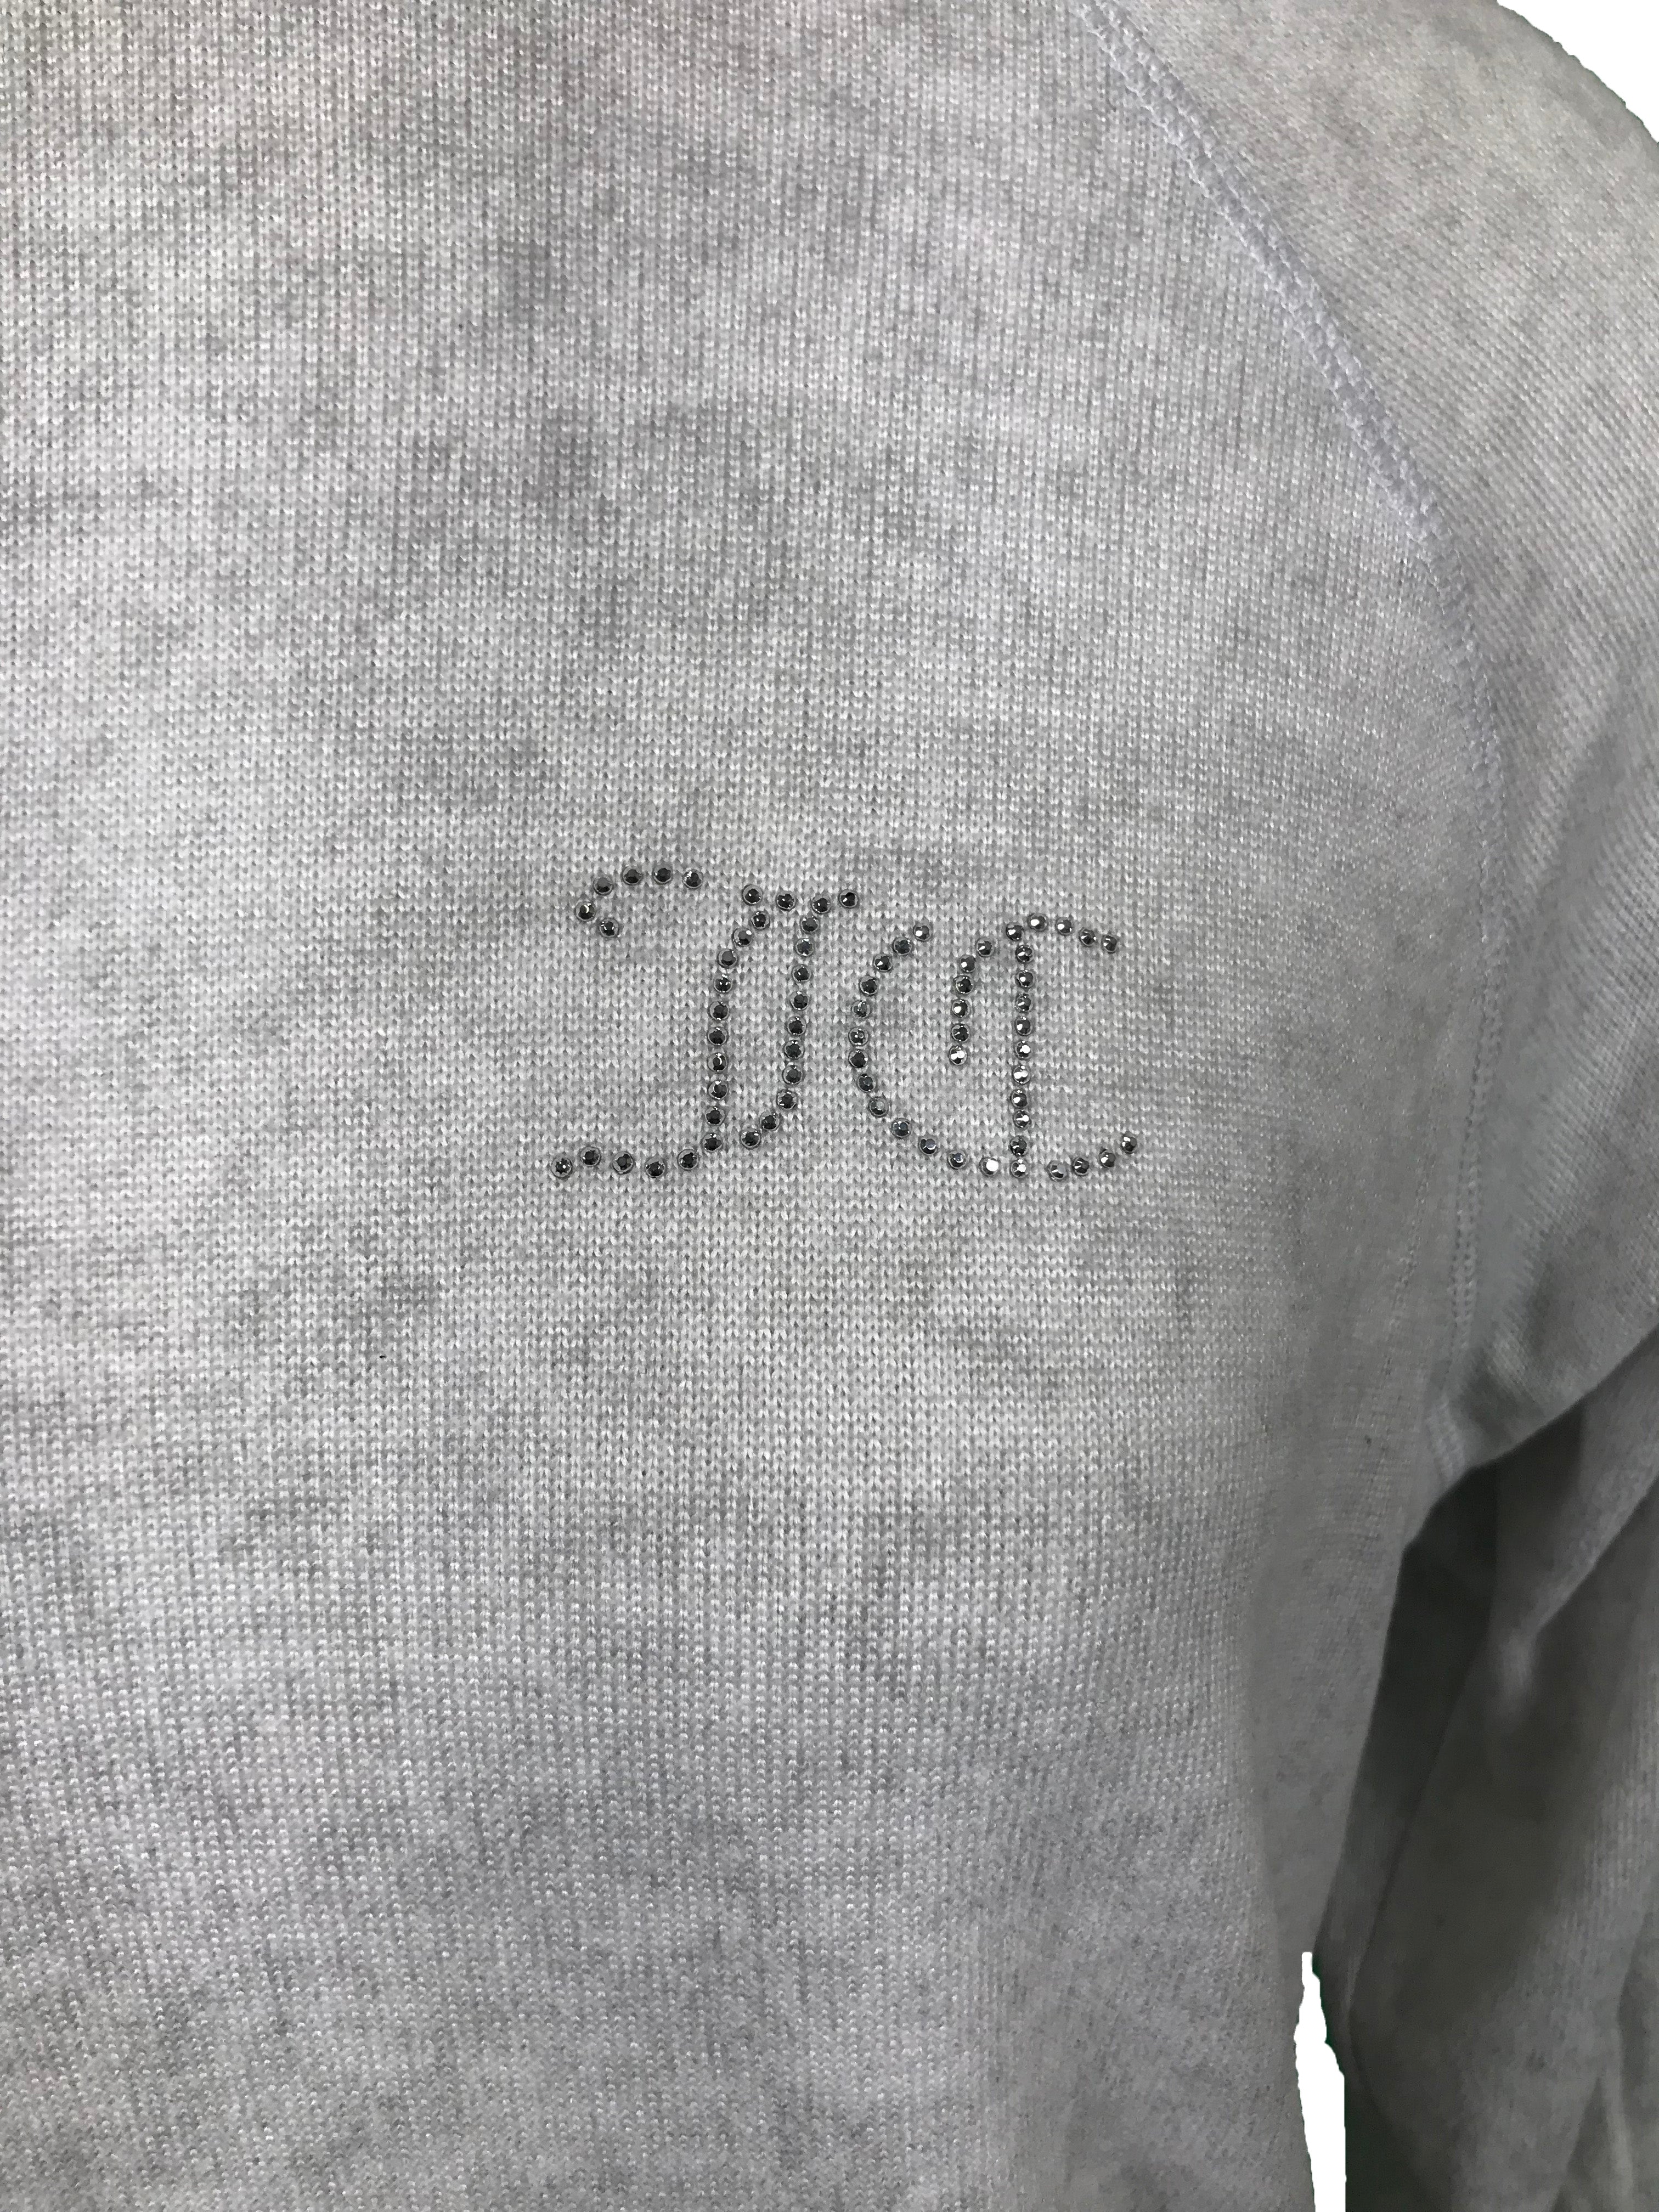 Juicy Couture Gray Sleepwear Set Women's Size S